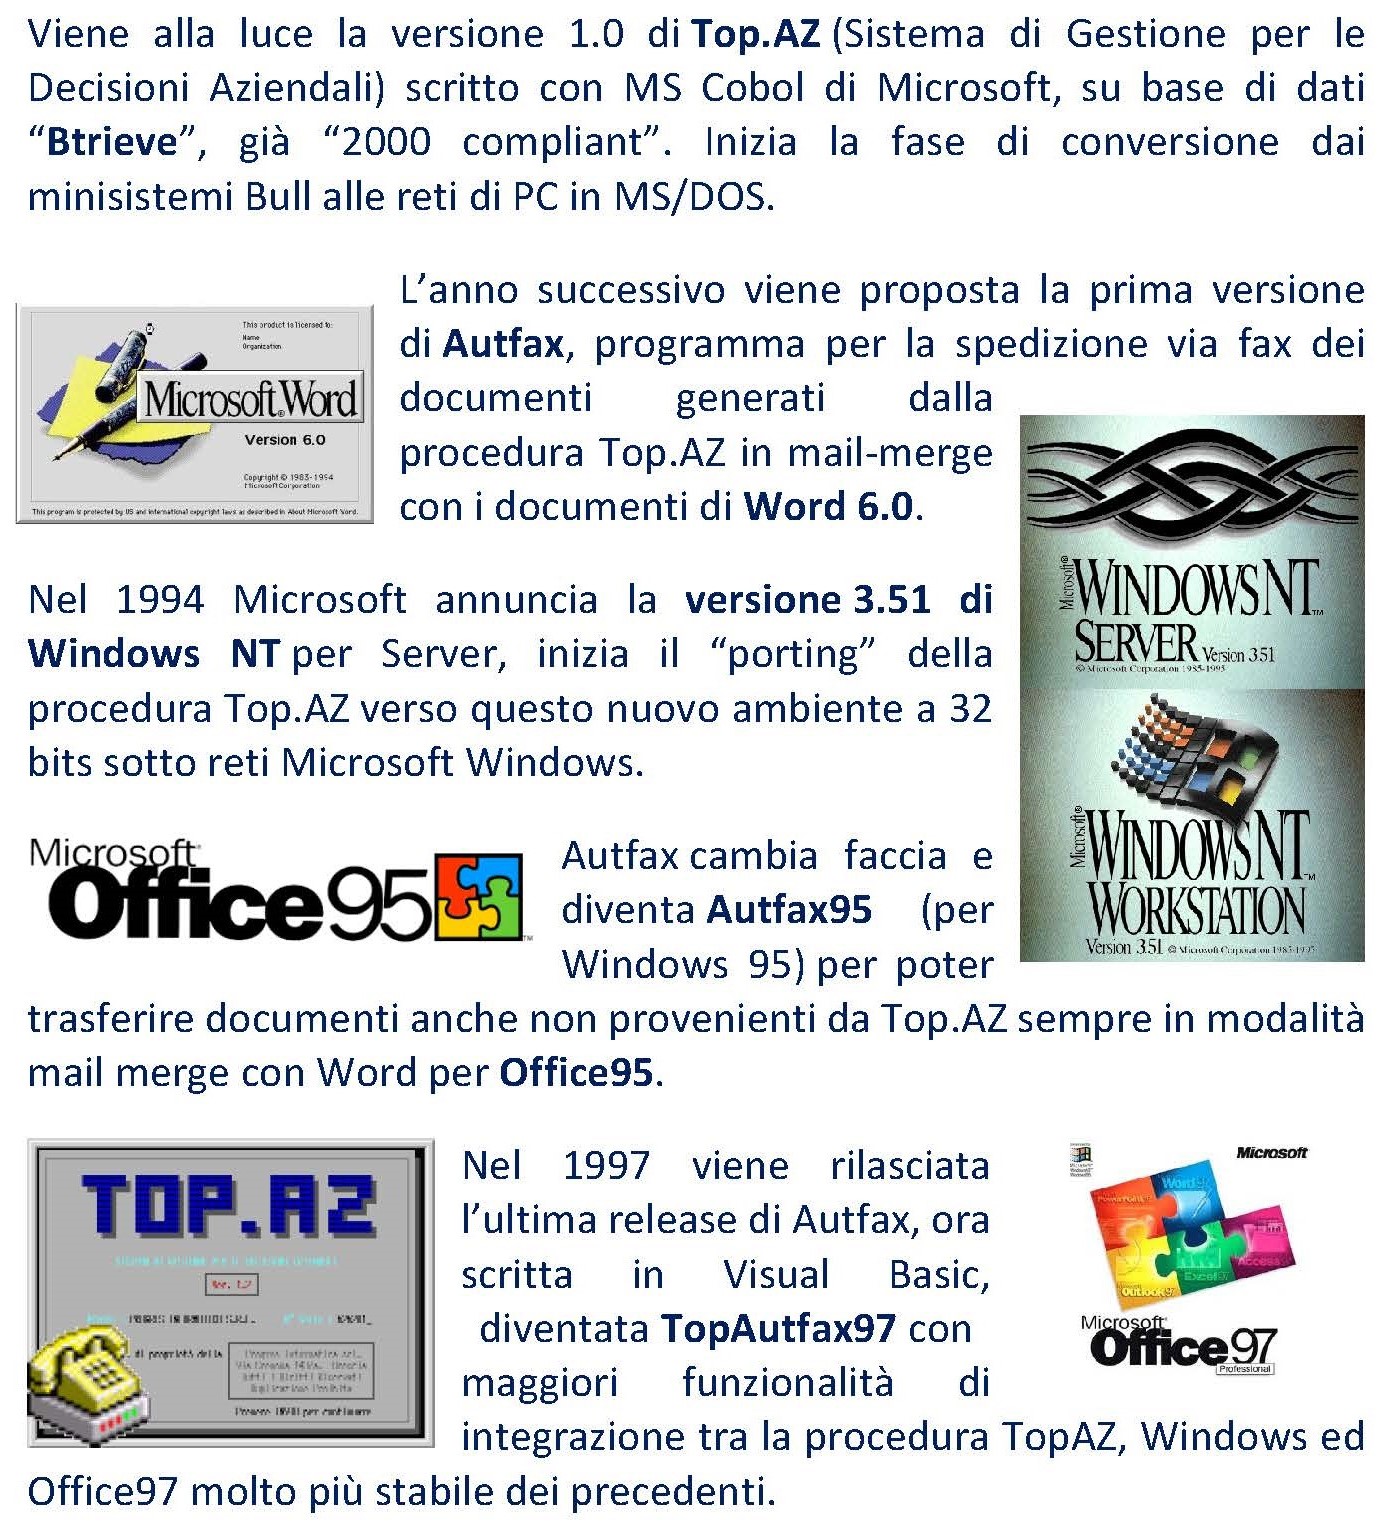 Viene alla luce la versione 1.0 di Top.AZ (Sistema di Gestione per le Decisioni Aziendali) scritto con MS Cobol di Microsoft, su base di dati “Btrieve”, già “2000 compliant”. Inizia la fase di conversione dai minisistemi Bull alle reti di PC in MS/DOS. L’anno successivo viene proposta la prima versione di Autfax, programma per la spedizione via fax dei documenti generati dalla procedura Top.AZ in mail-merge con i documenti di Word 6.0. Nel 1994 Microsoft annuncia la versione 3.51 di Windows NT per Server, inizia il “porting” della procedura Top.AZ verso questo nuovo ambiente a 32 bits sotto reti Microsoft Windows. Autfax cambia faccia e diventa Autfax95 (per Windows 95) per poter trasferire documenti anche non provenienti da Top.AZ sempre in modalità mail merge con Word per Office95. Nel 1997 viene rilasciata l’ultima release di Autfax, ora scritta in Visual Basic, diventata TopAutfax97 con maggiori funzionalità di integrazione tra la procedura TopAZ, Windows ed Office97 molto più stabile dei precedenti. 